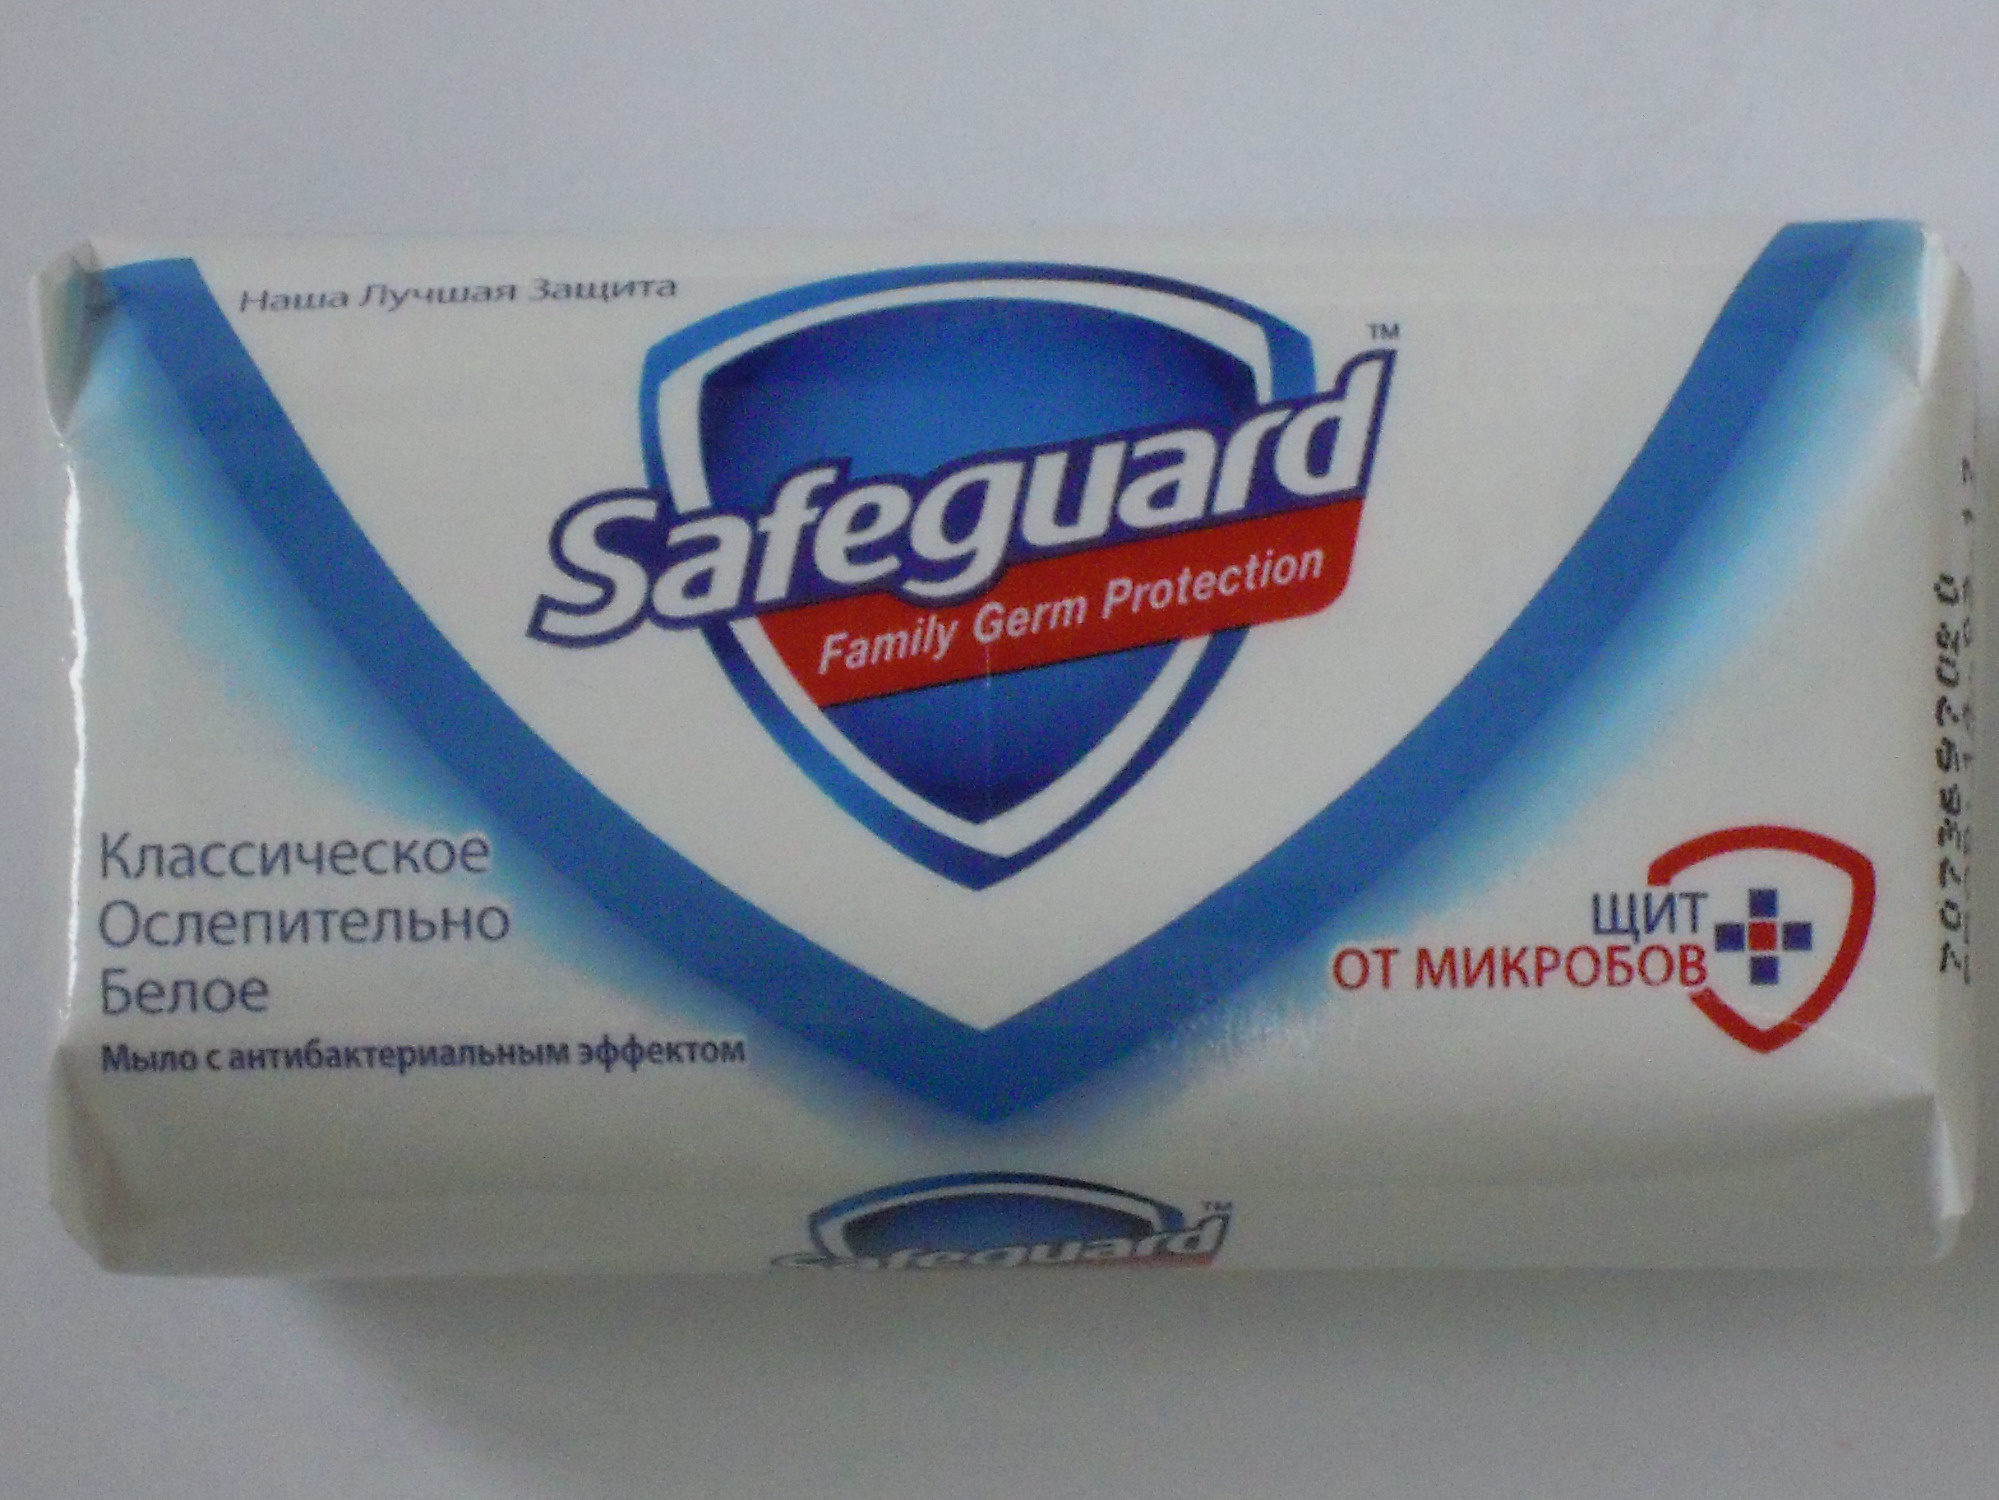 Safeguard Классическое Ослепительно Белое - Produkt - ru